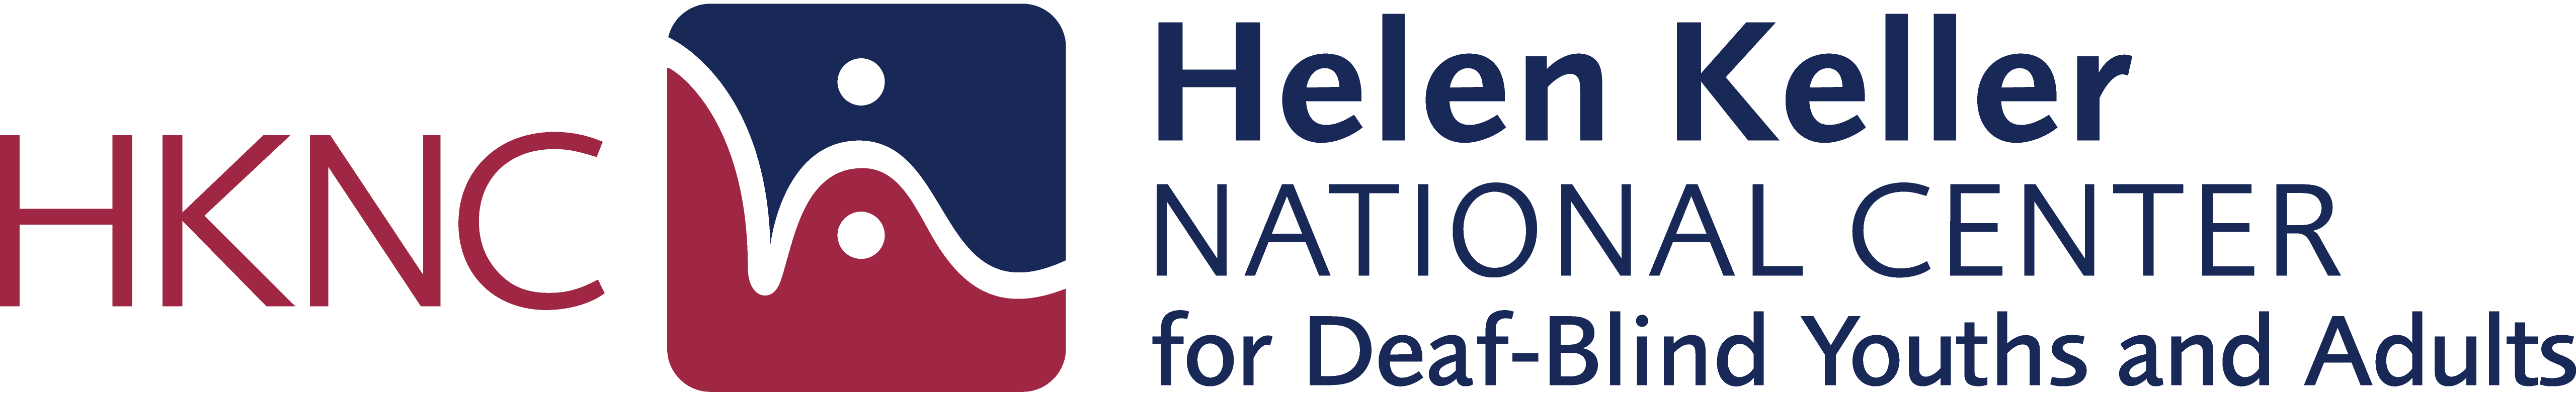 Helen Keller National Center Logo